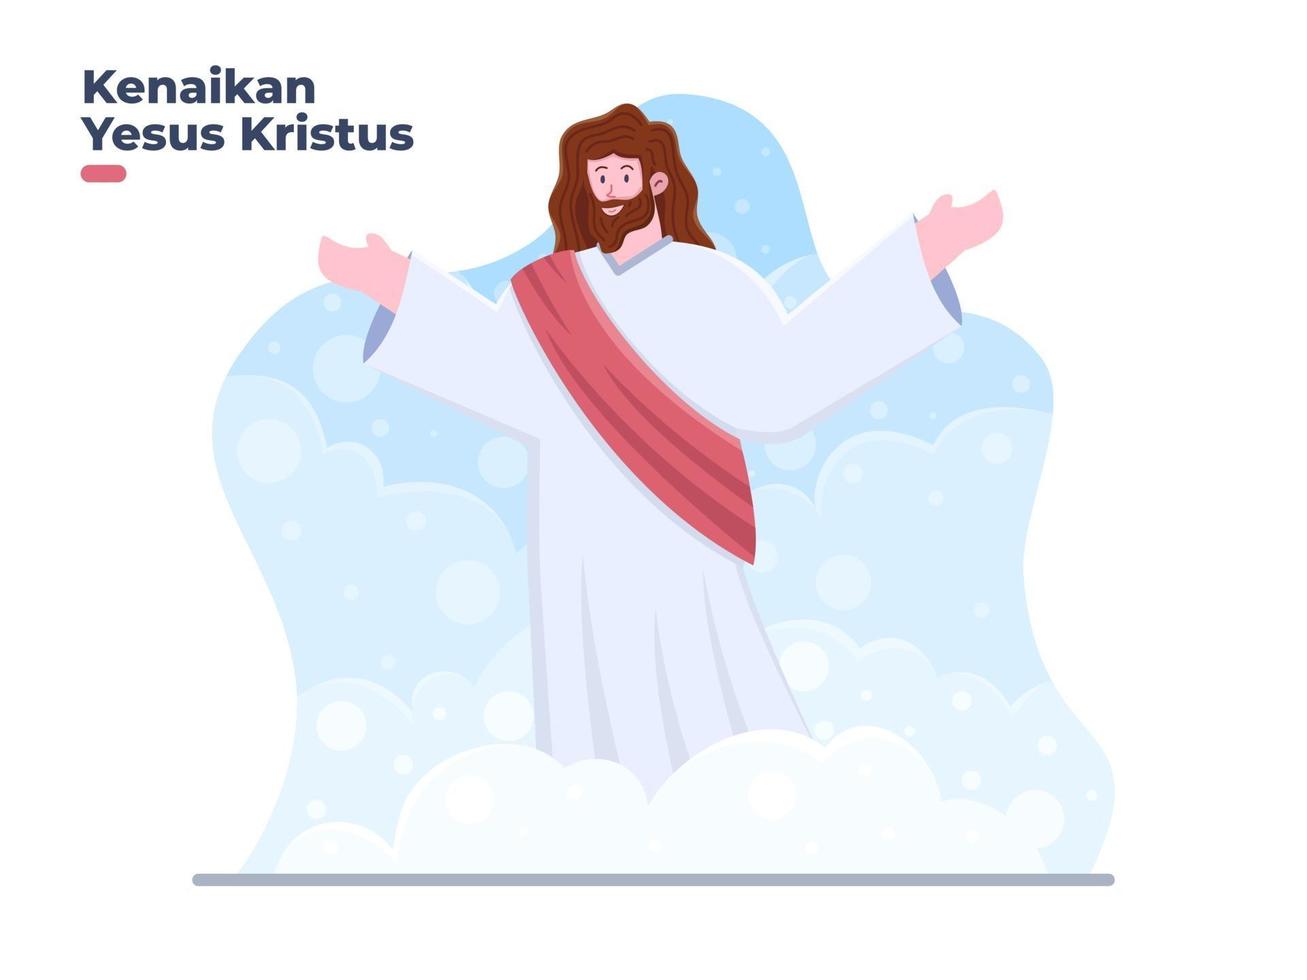 conception de dessin animé de résurrection. traduction célébrer le jour de l'ascension de jésus chist. vecteur